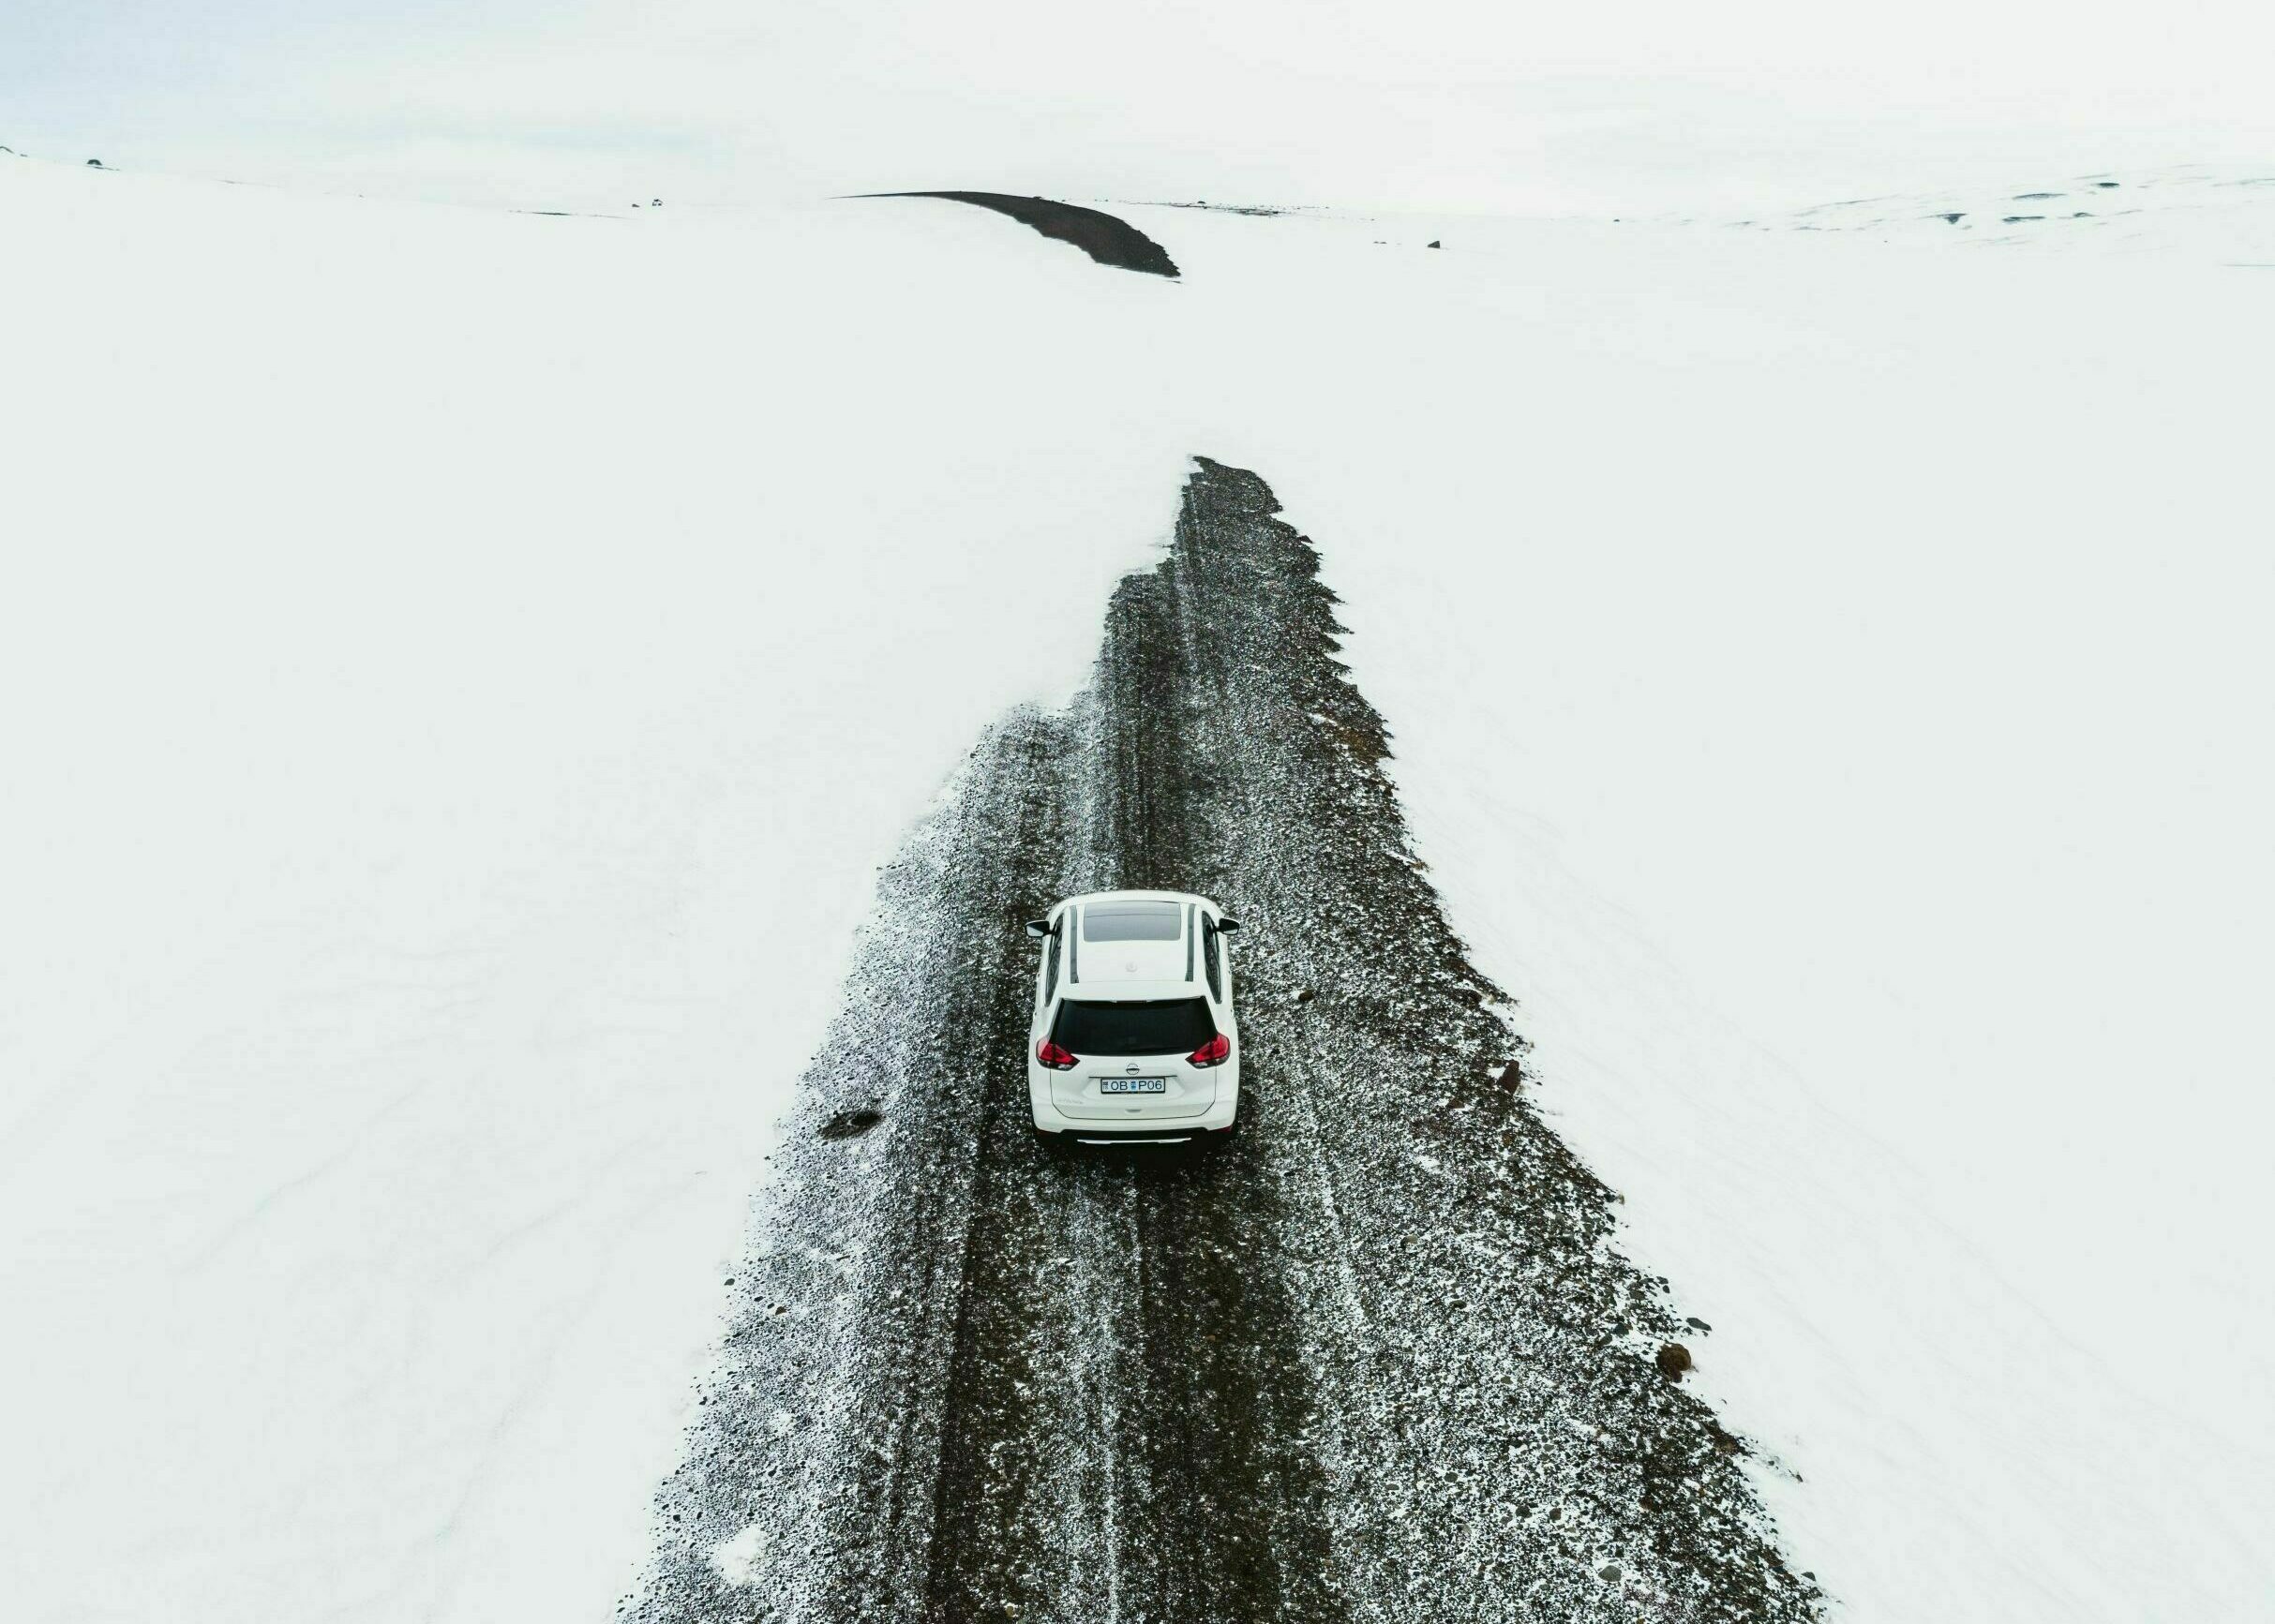 Straße mit Schnee in Westisland im Winter, weißes Auto fährt auf Straße, die Schneeverwehungen hat, rund um die Straße ist alles weiß